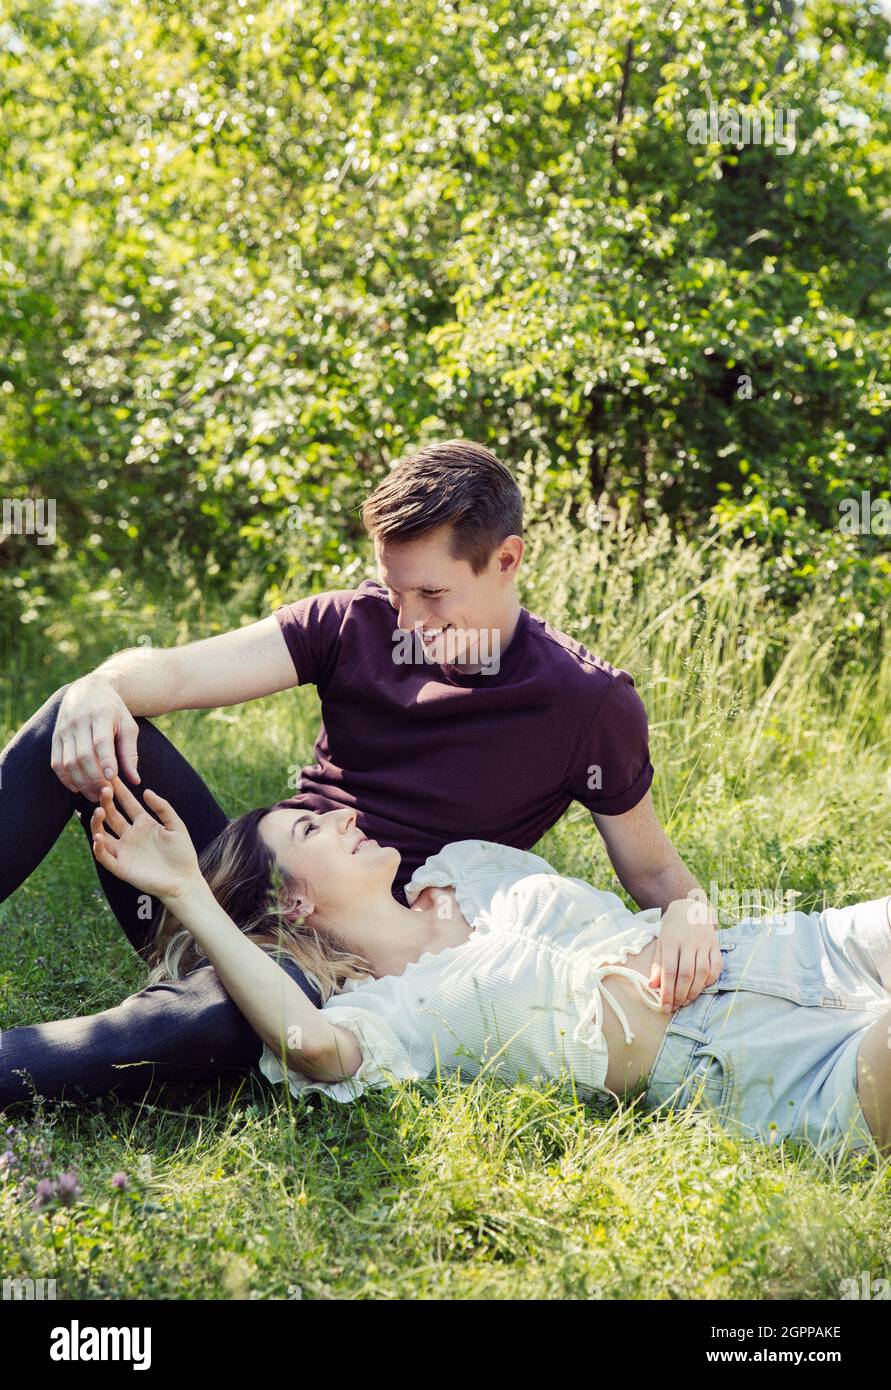 Autriche, Vienne, jeune couple souriant flirtant dans le parc Banque D'Images